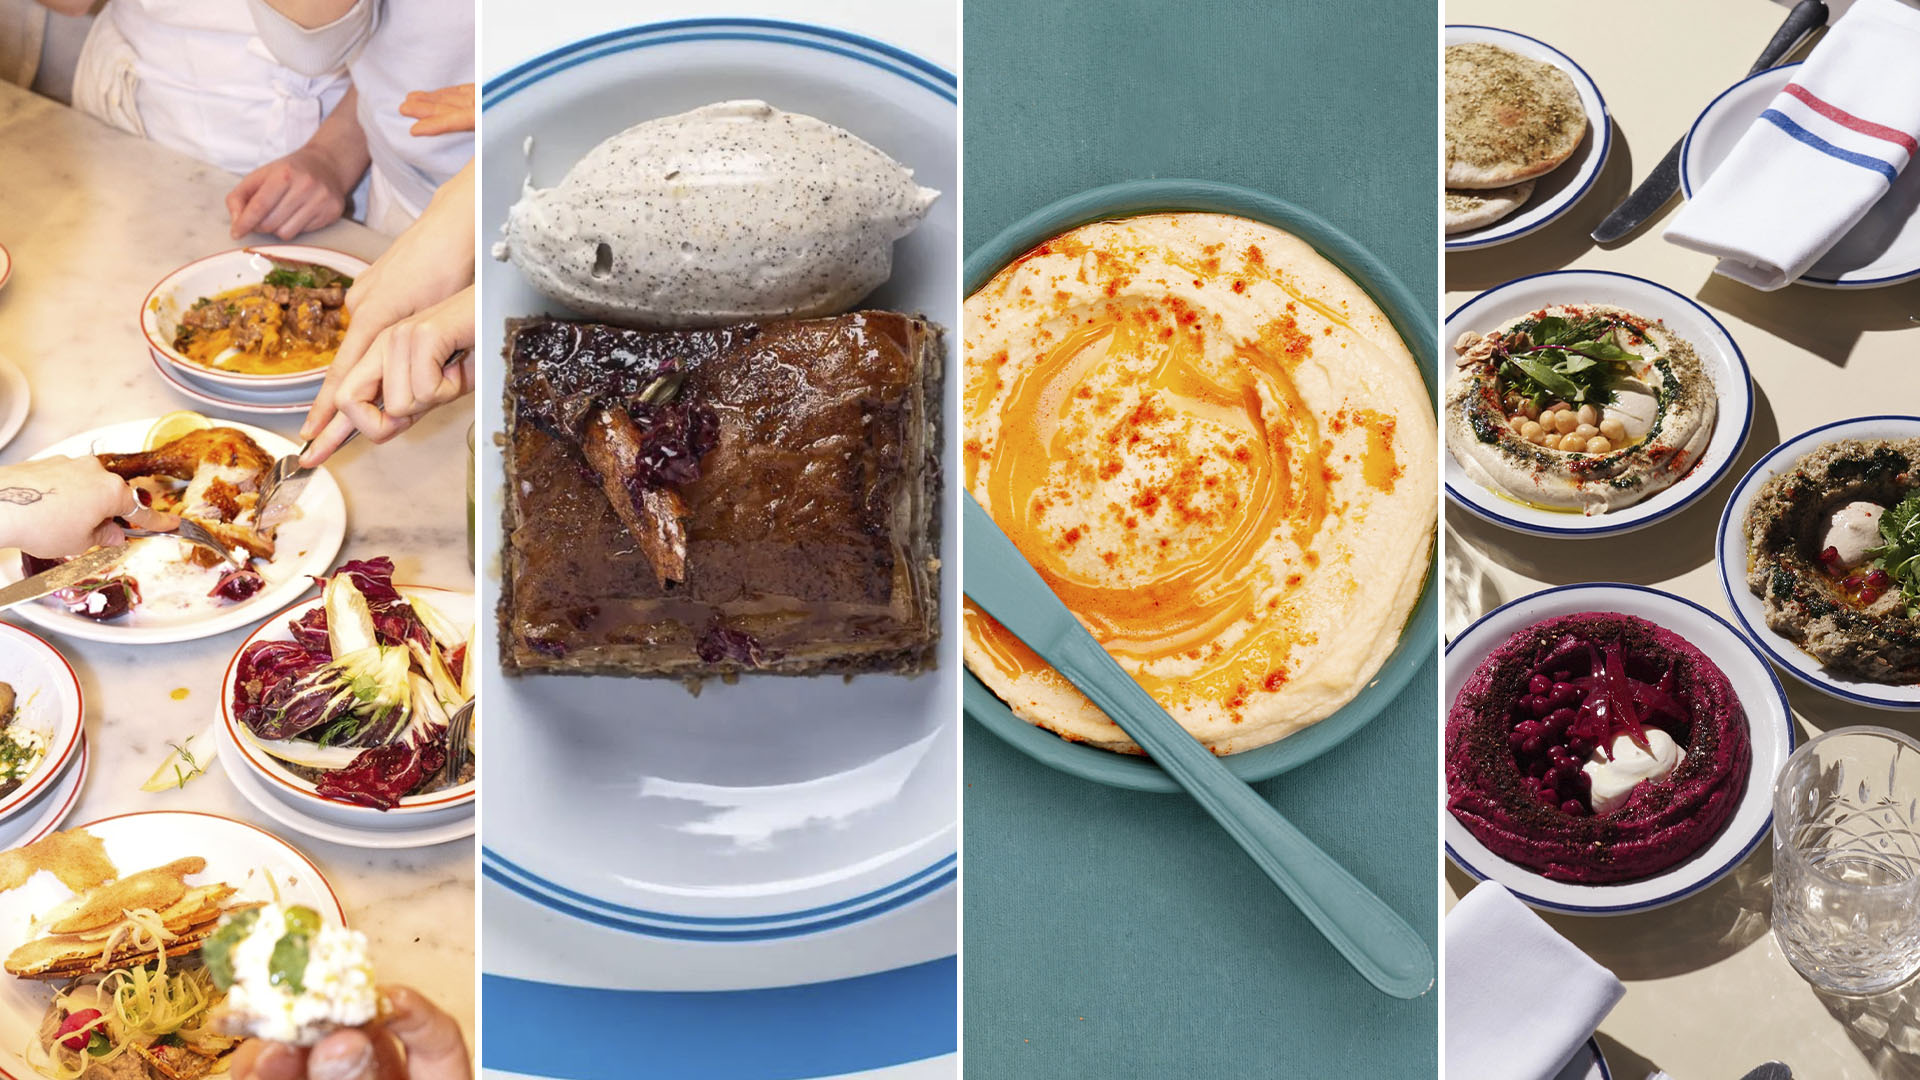 Rosh Hashaná: 4 propuestas para celebrar el Año Nuevo judío y disfrutar de platos típicos